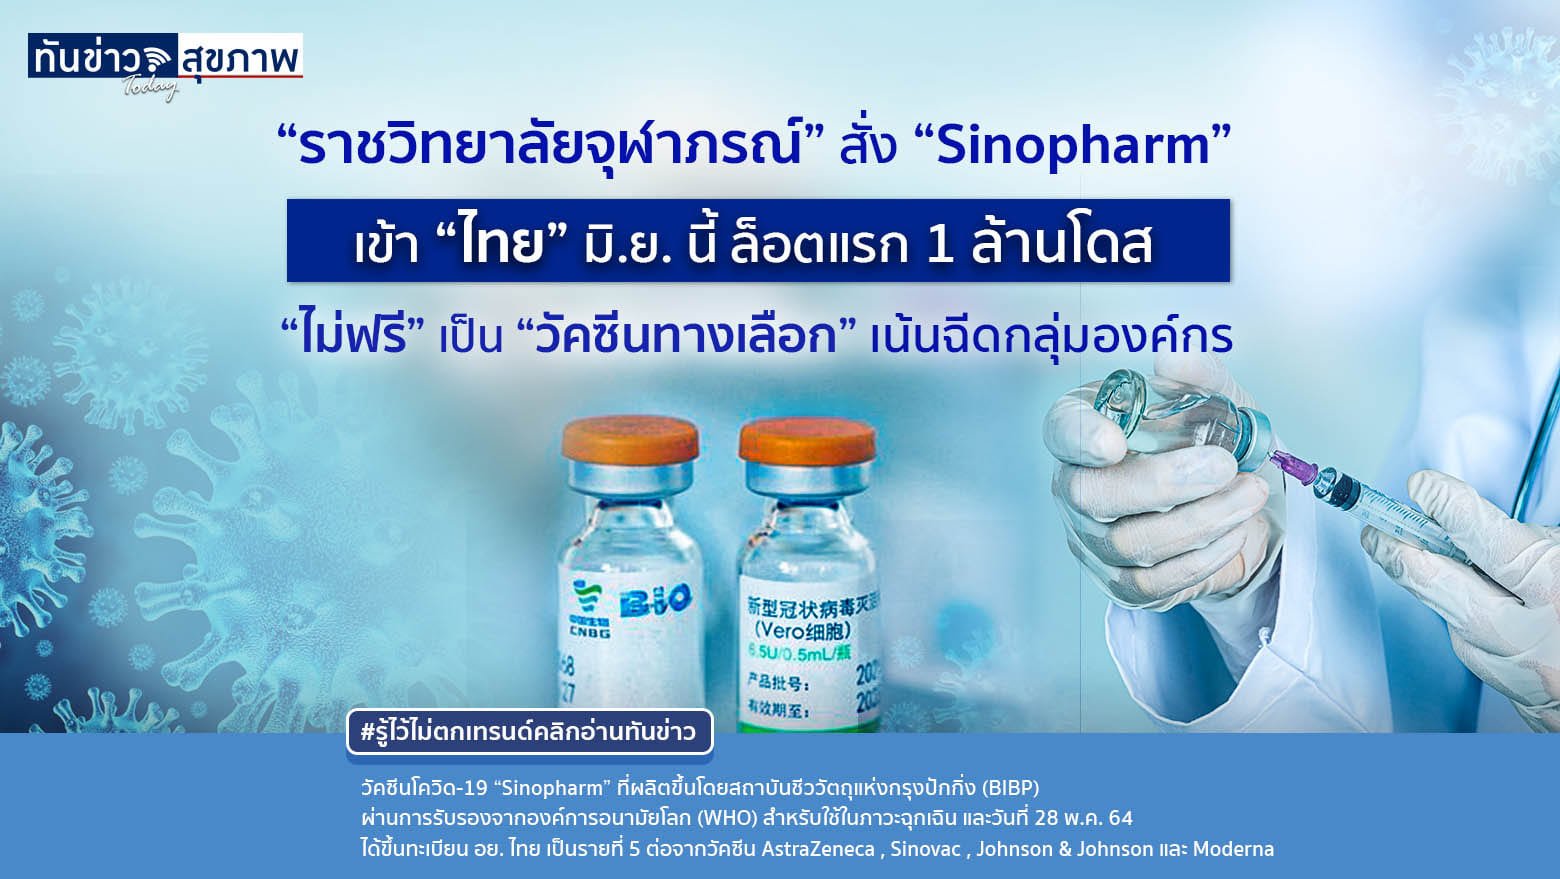 “ราชวิทยาลัยจุฬาภรณ์” สั่ง “Sinopharm”  “ไม่ฟรี” เป็น “วัคซีนทางเลือก” เน้นฉีดกลุ่มองค์กร